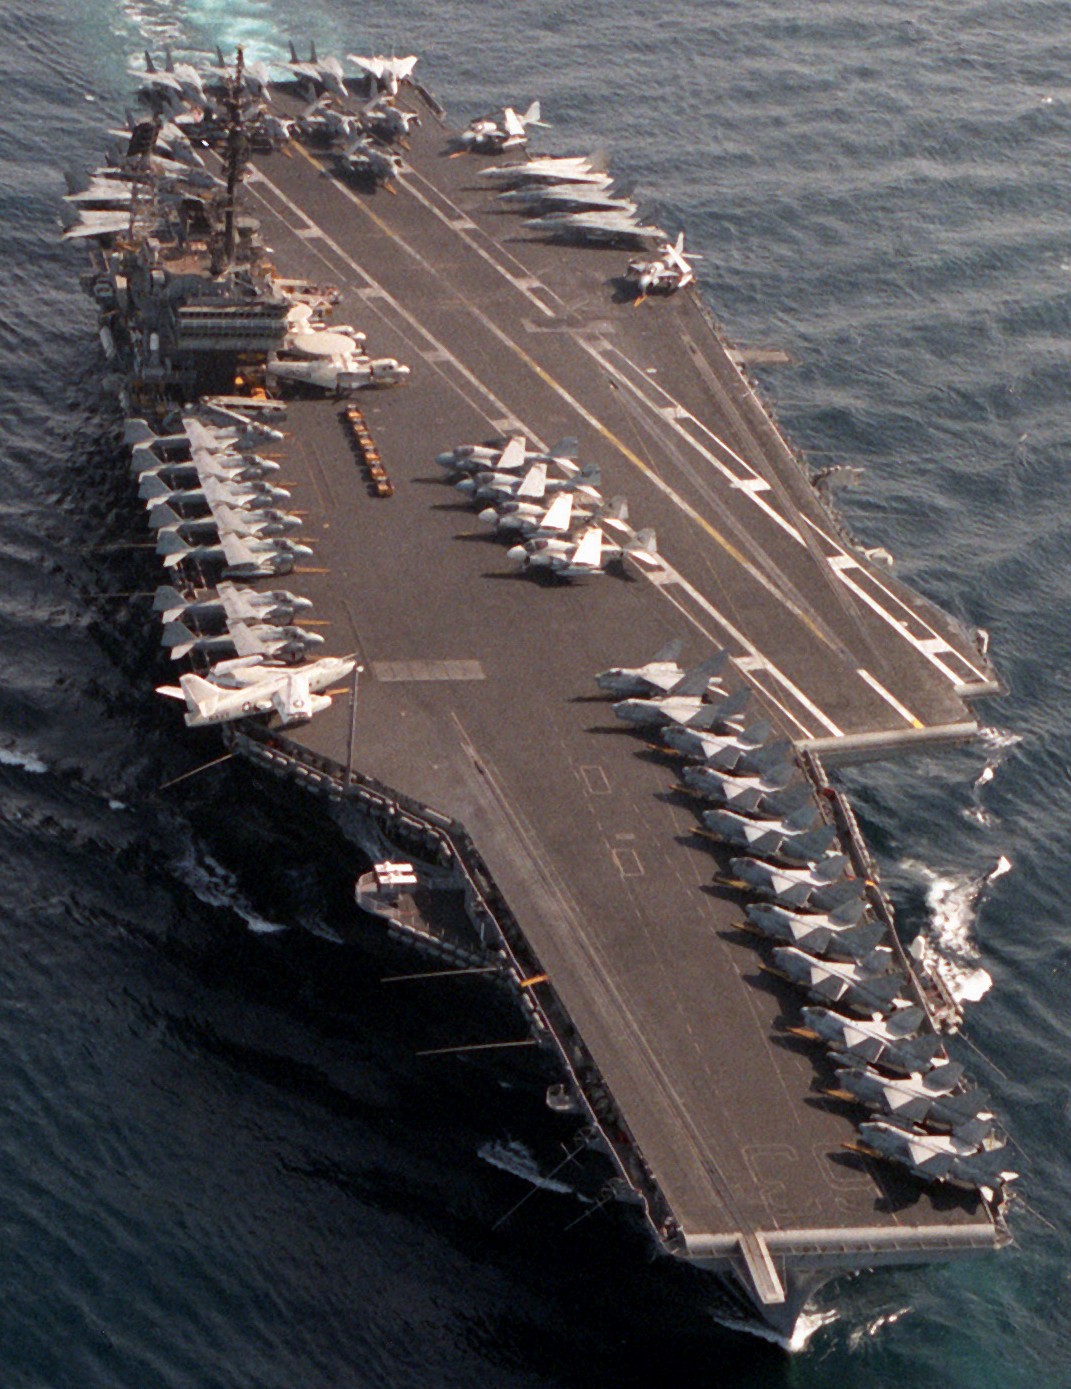 cv-63 uss kitty hawk aircraft carrier air wing cvw-9 us navy 418